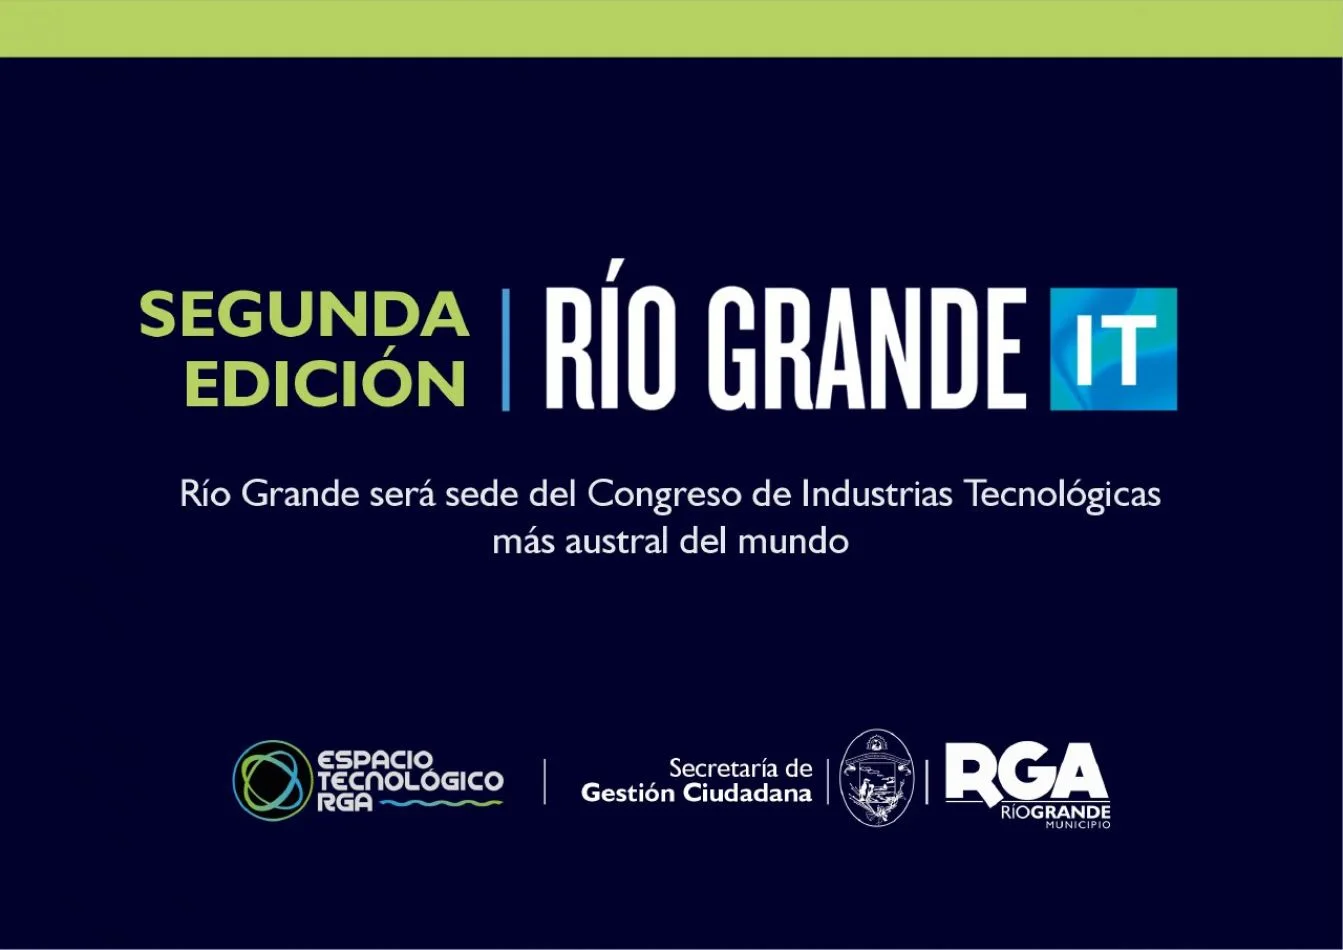 Río Grande será sede del Congreso de Industrias Tecnológicas más austral del mundo